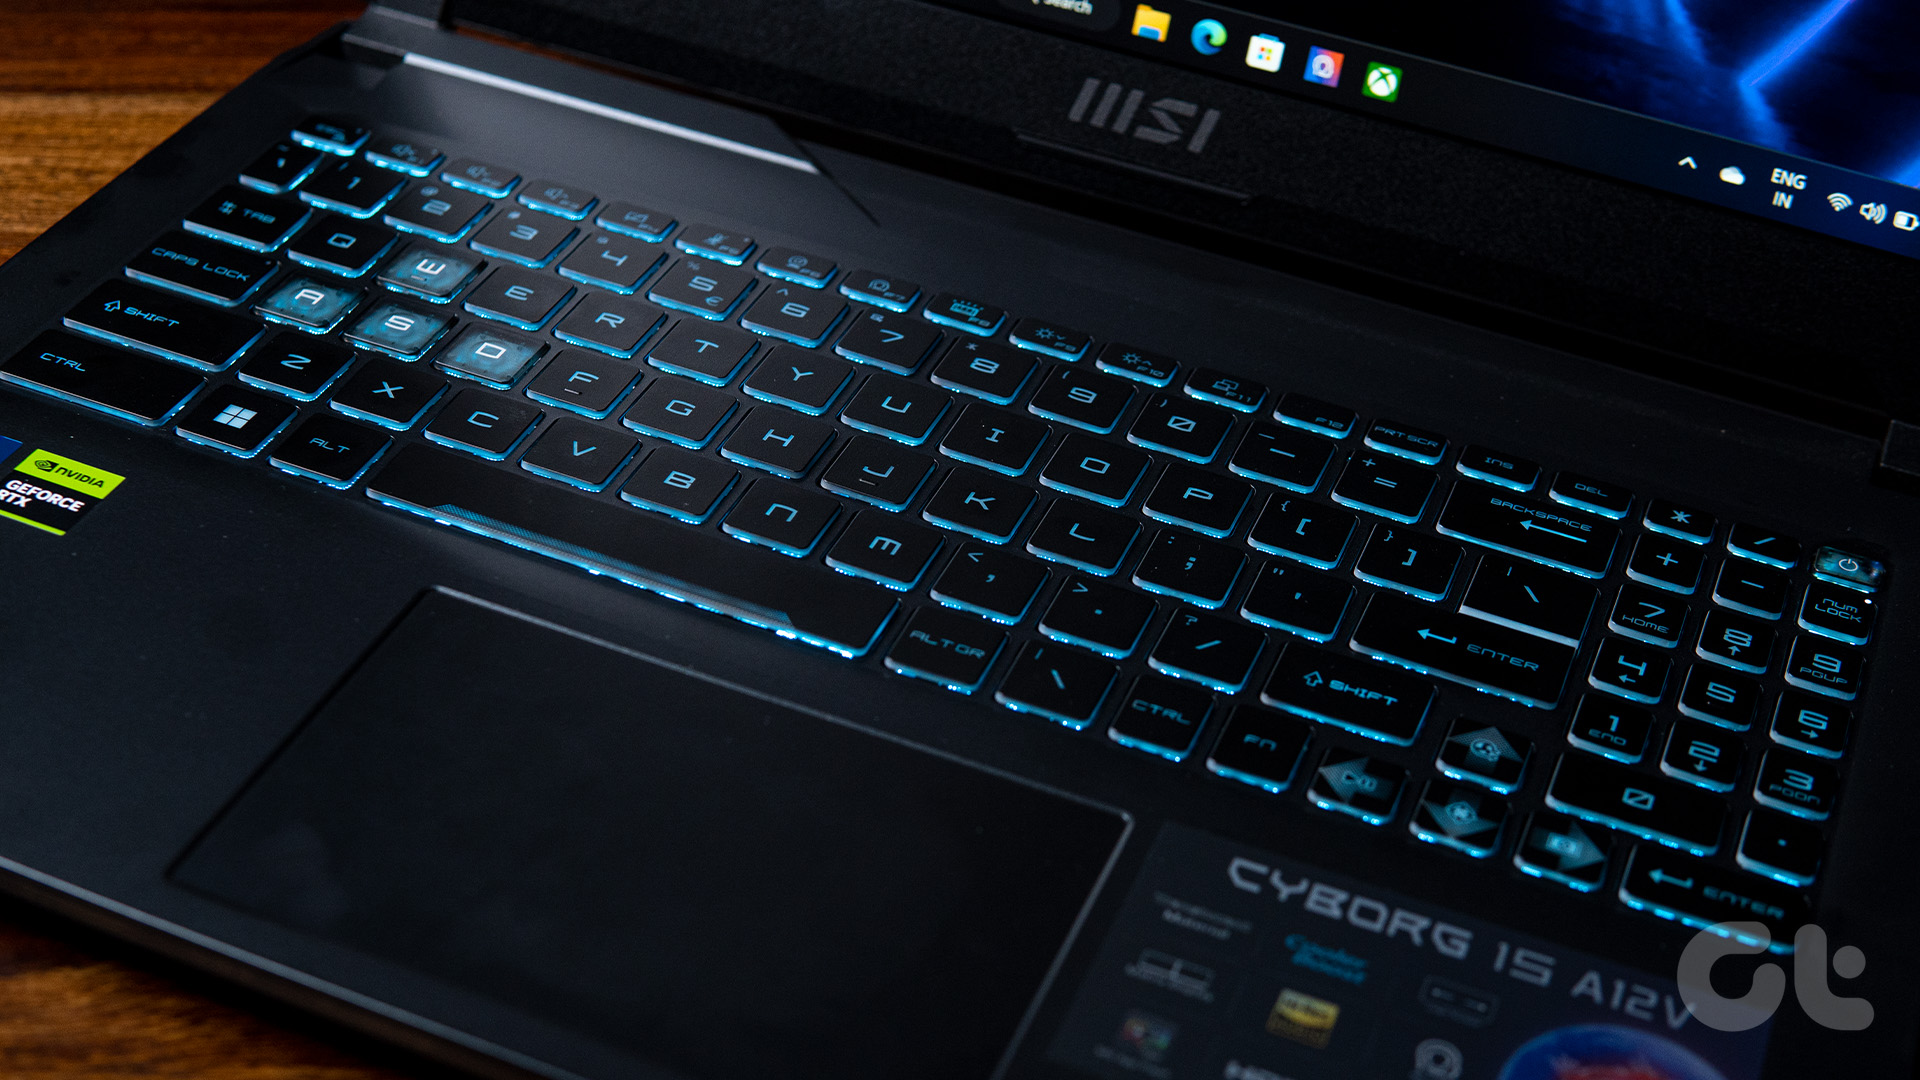 MSI Cyborg 15 Review Full Keyboard